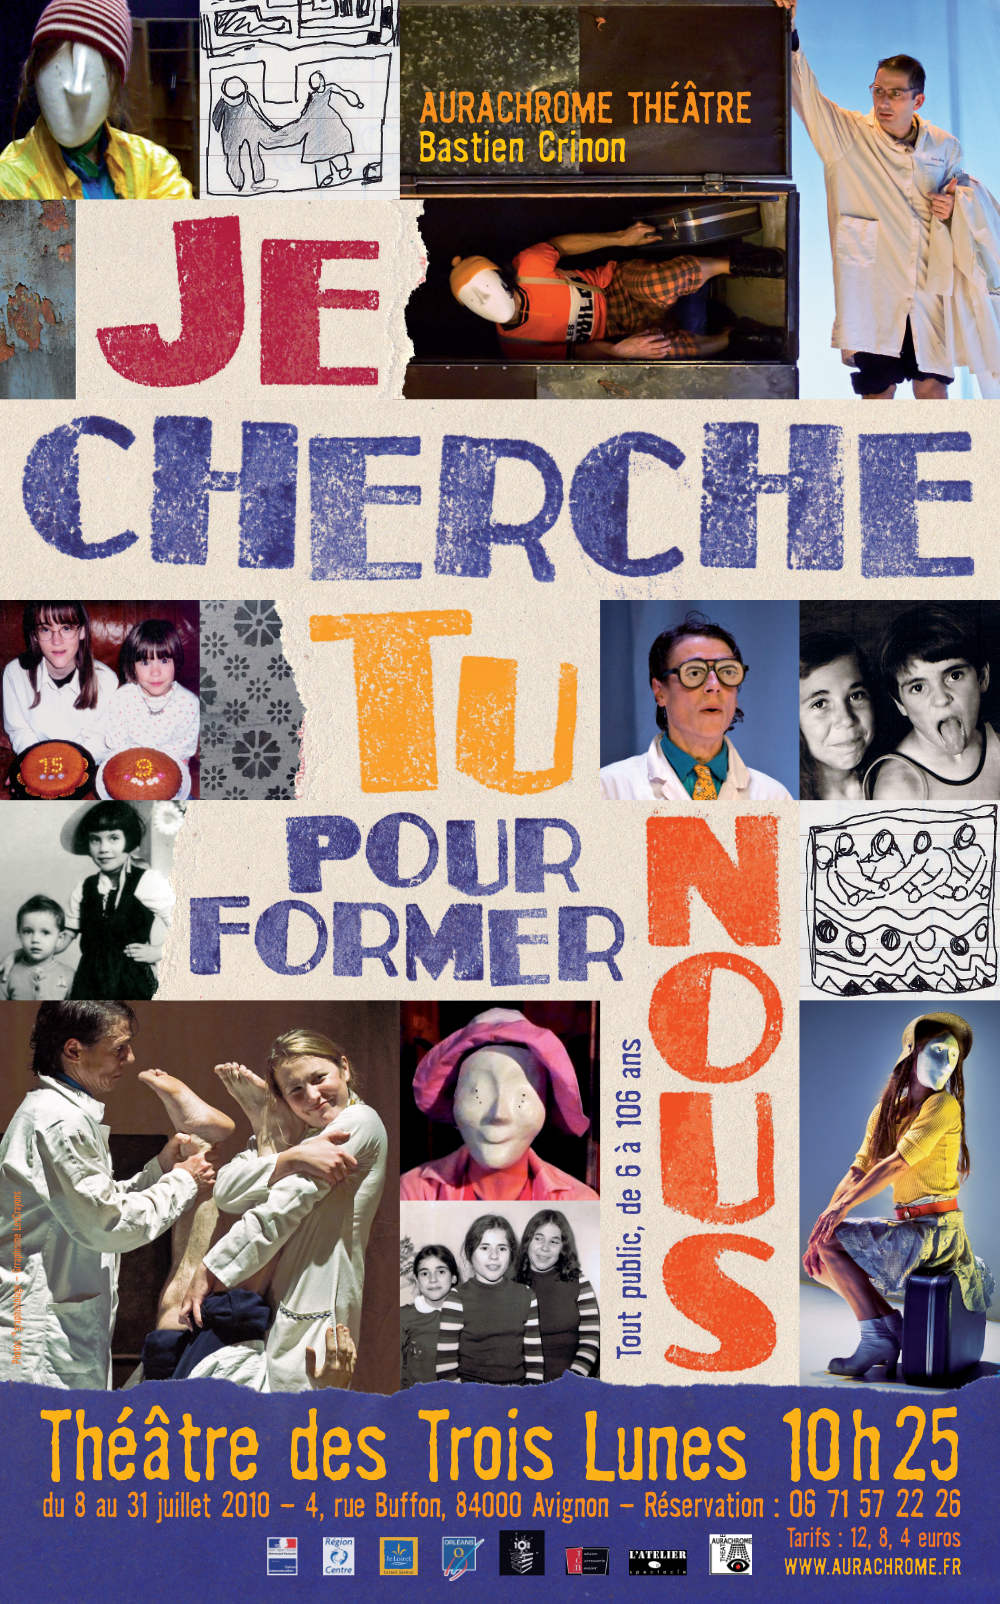 Aurélie Vilette © LesCrayons.net - Affiche du spectacle "Je cherche tu pour former nous", Aurachrome théâtre